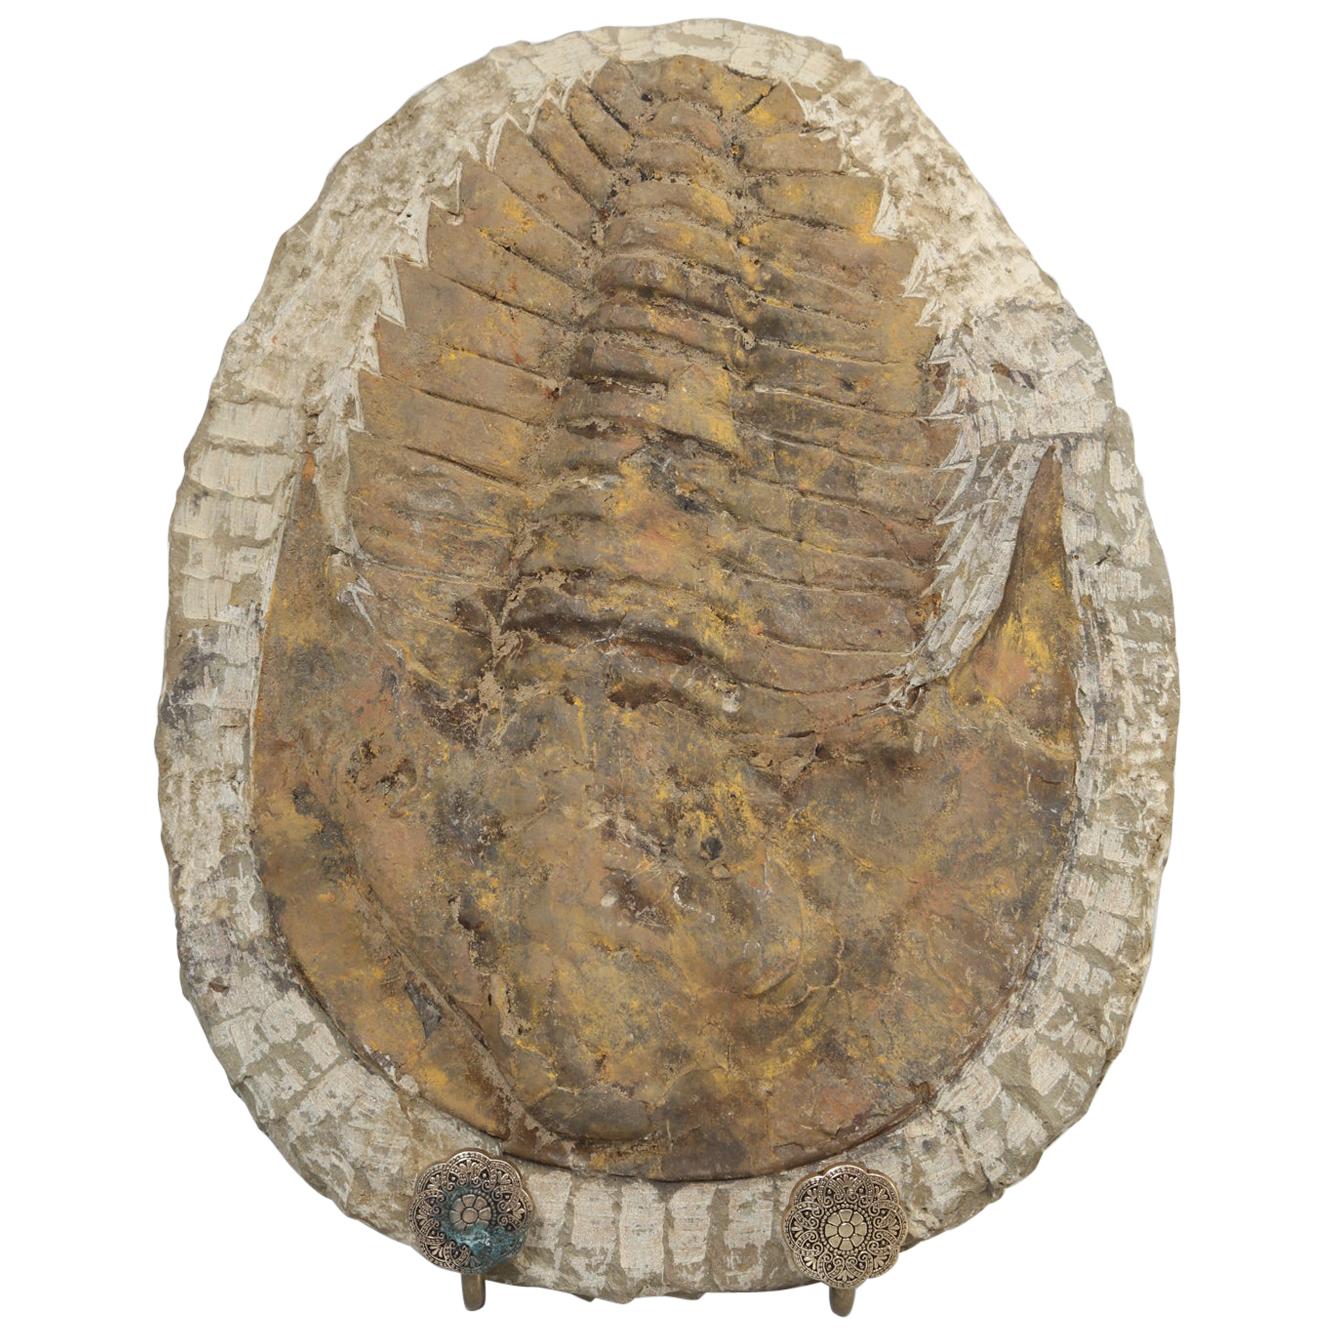 Cambropallas Trilobite Fossil from Morocco